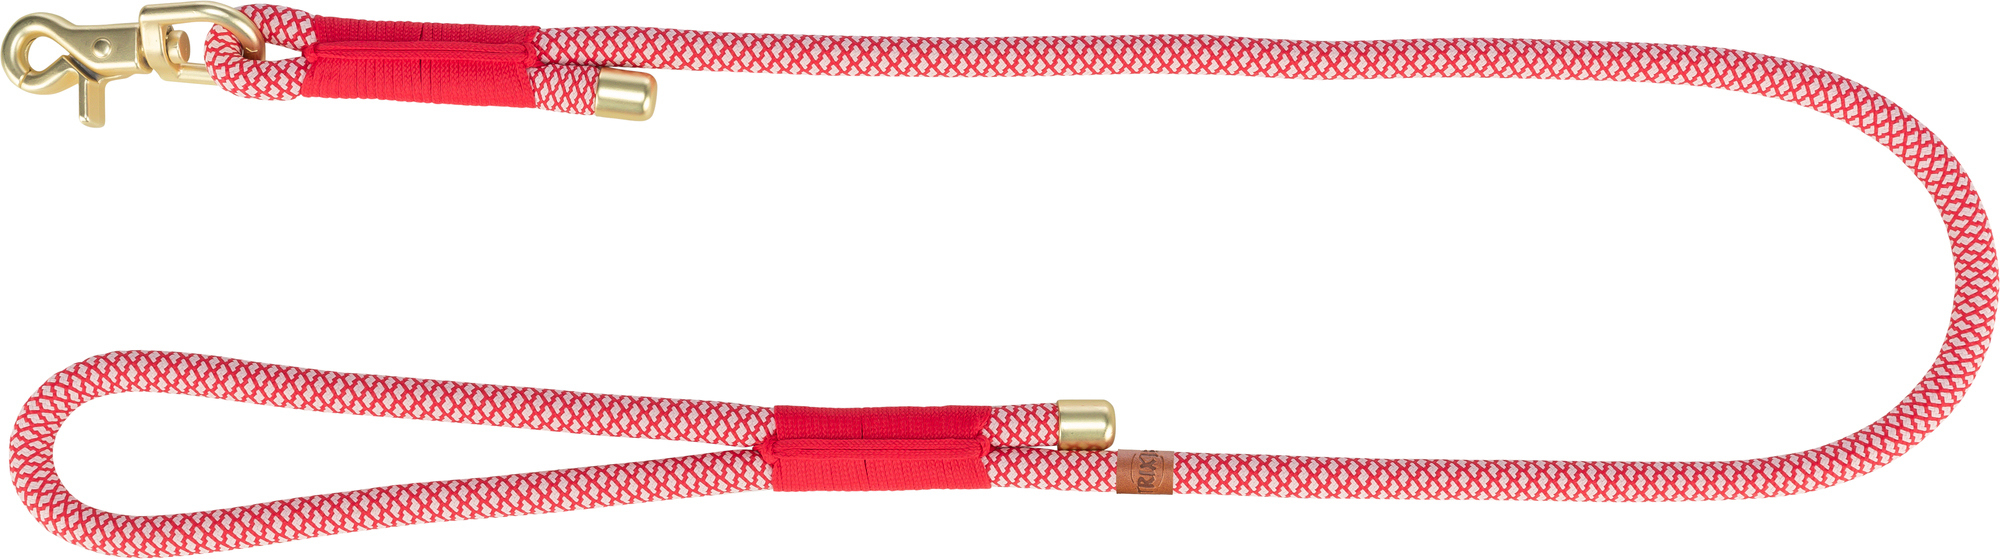 Guia Soft Rope Trixie - 1m - várias cores disponíveis